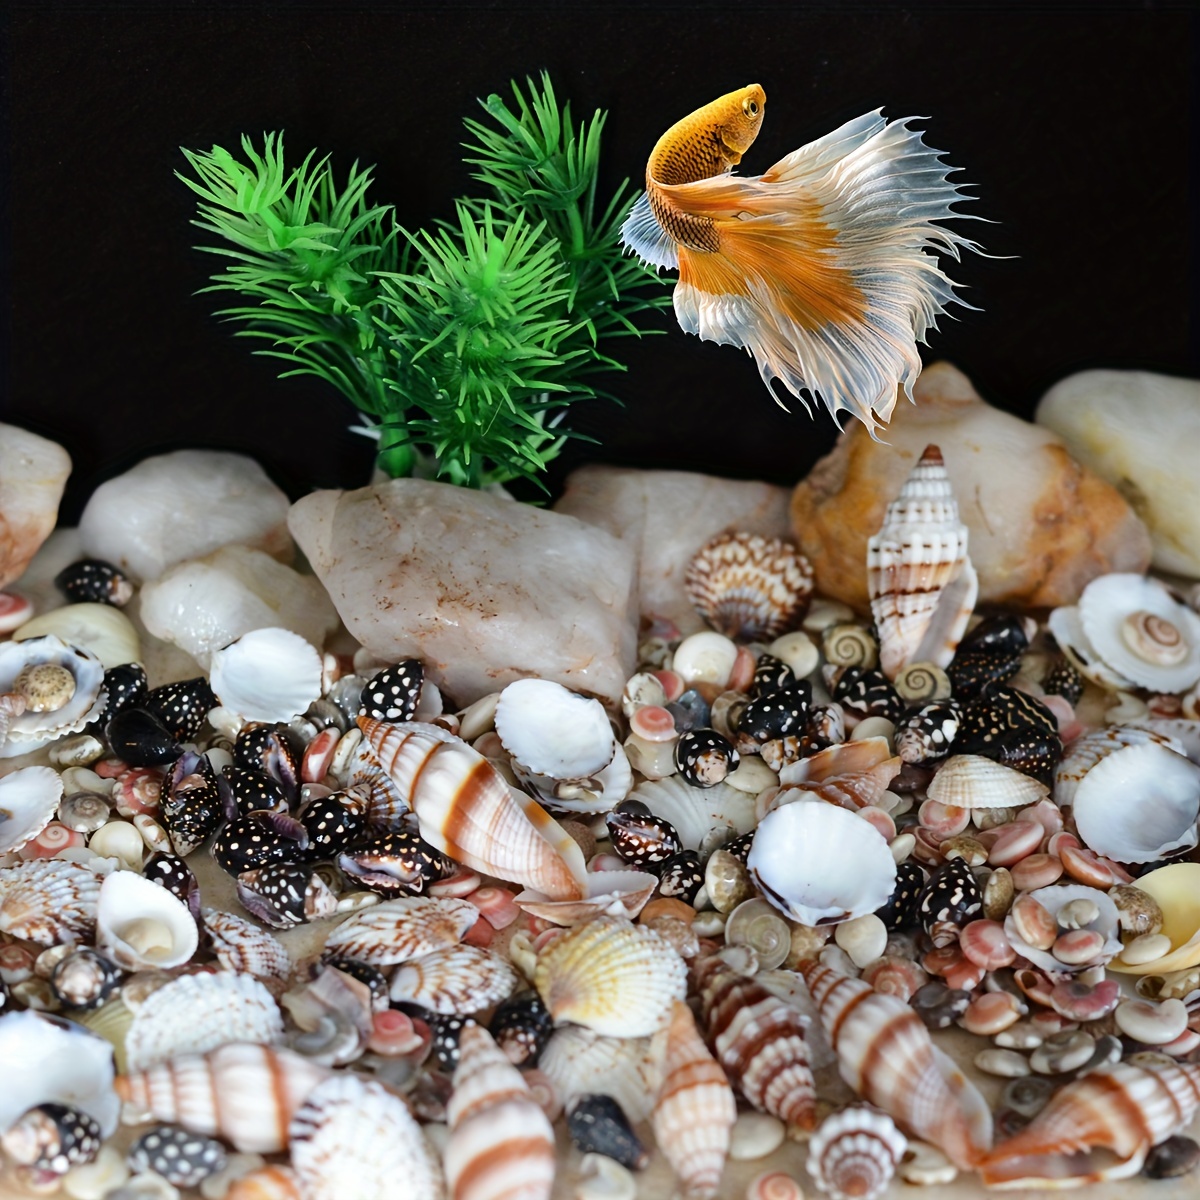 Beach Seashells Natural Shells. Ocean Seashells. Craft Aquarium